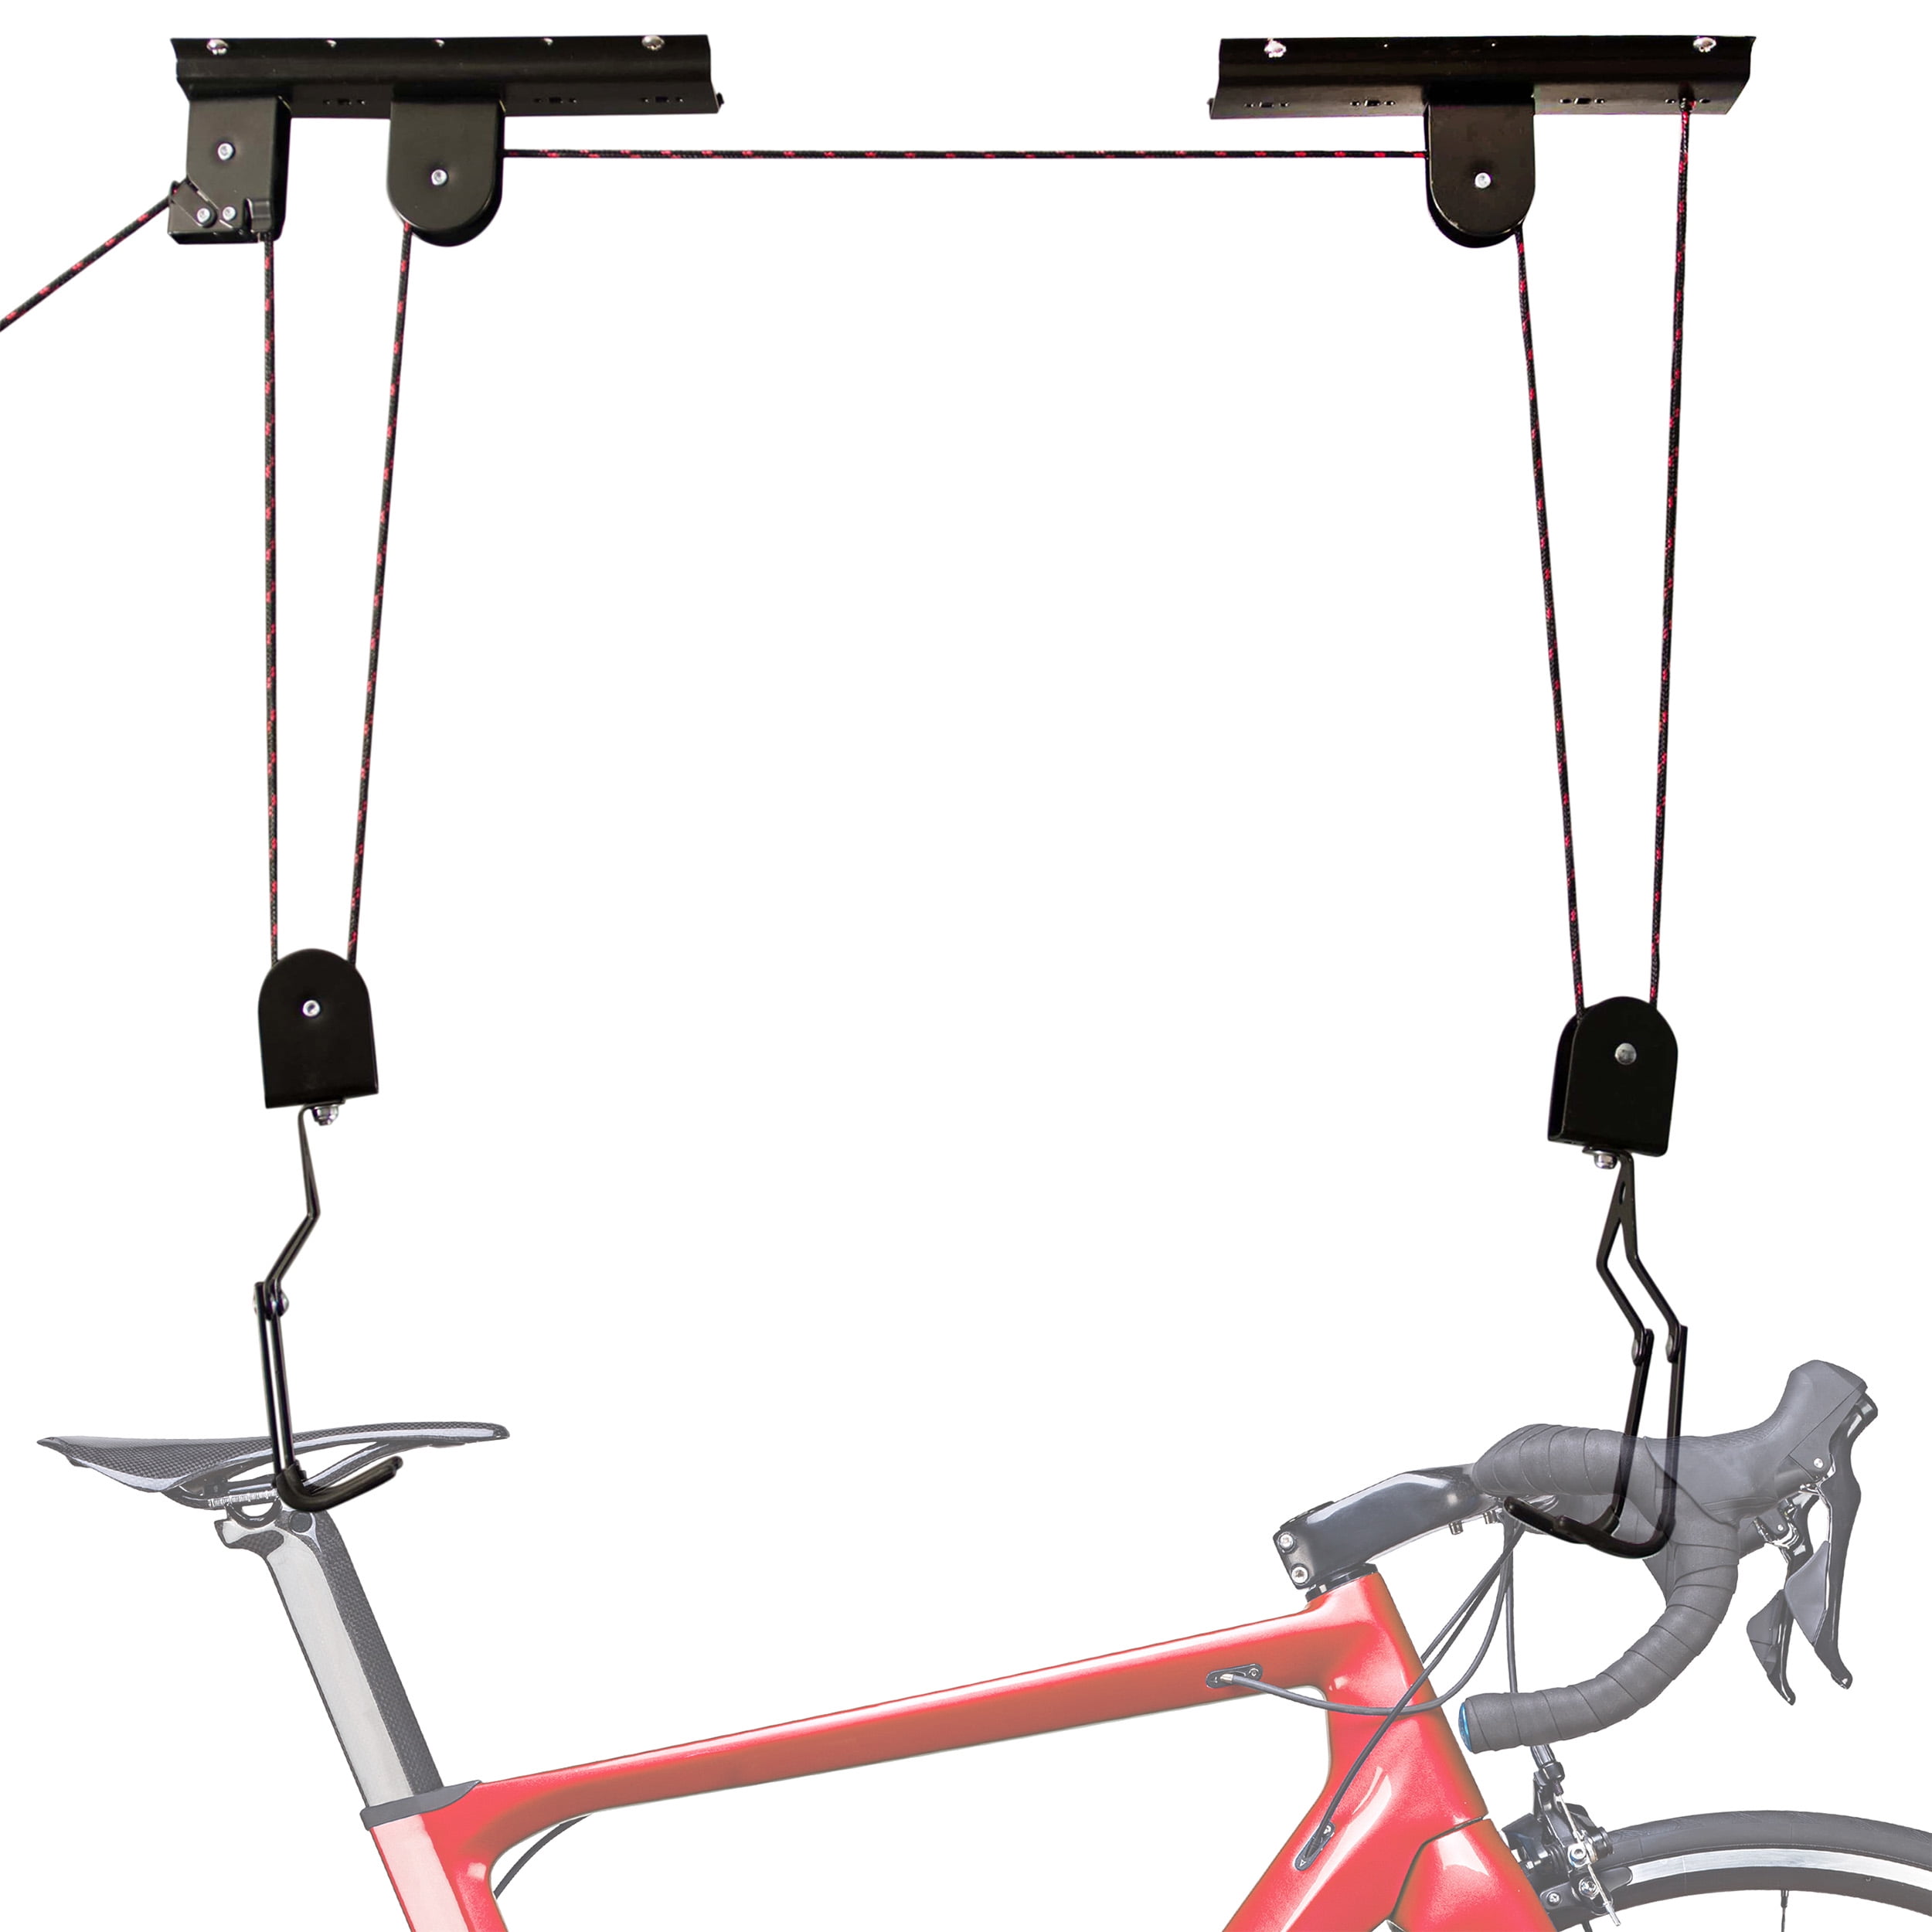 Ceiling Bicycle Racks  Bike storage solutions, Bike storage, Bike storage  garage